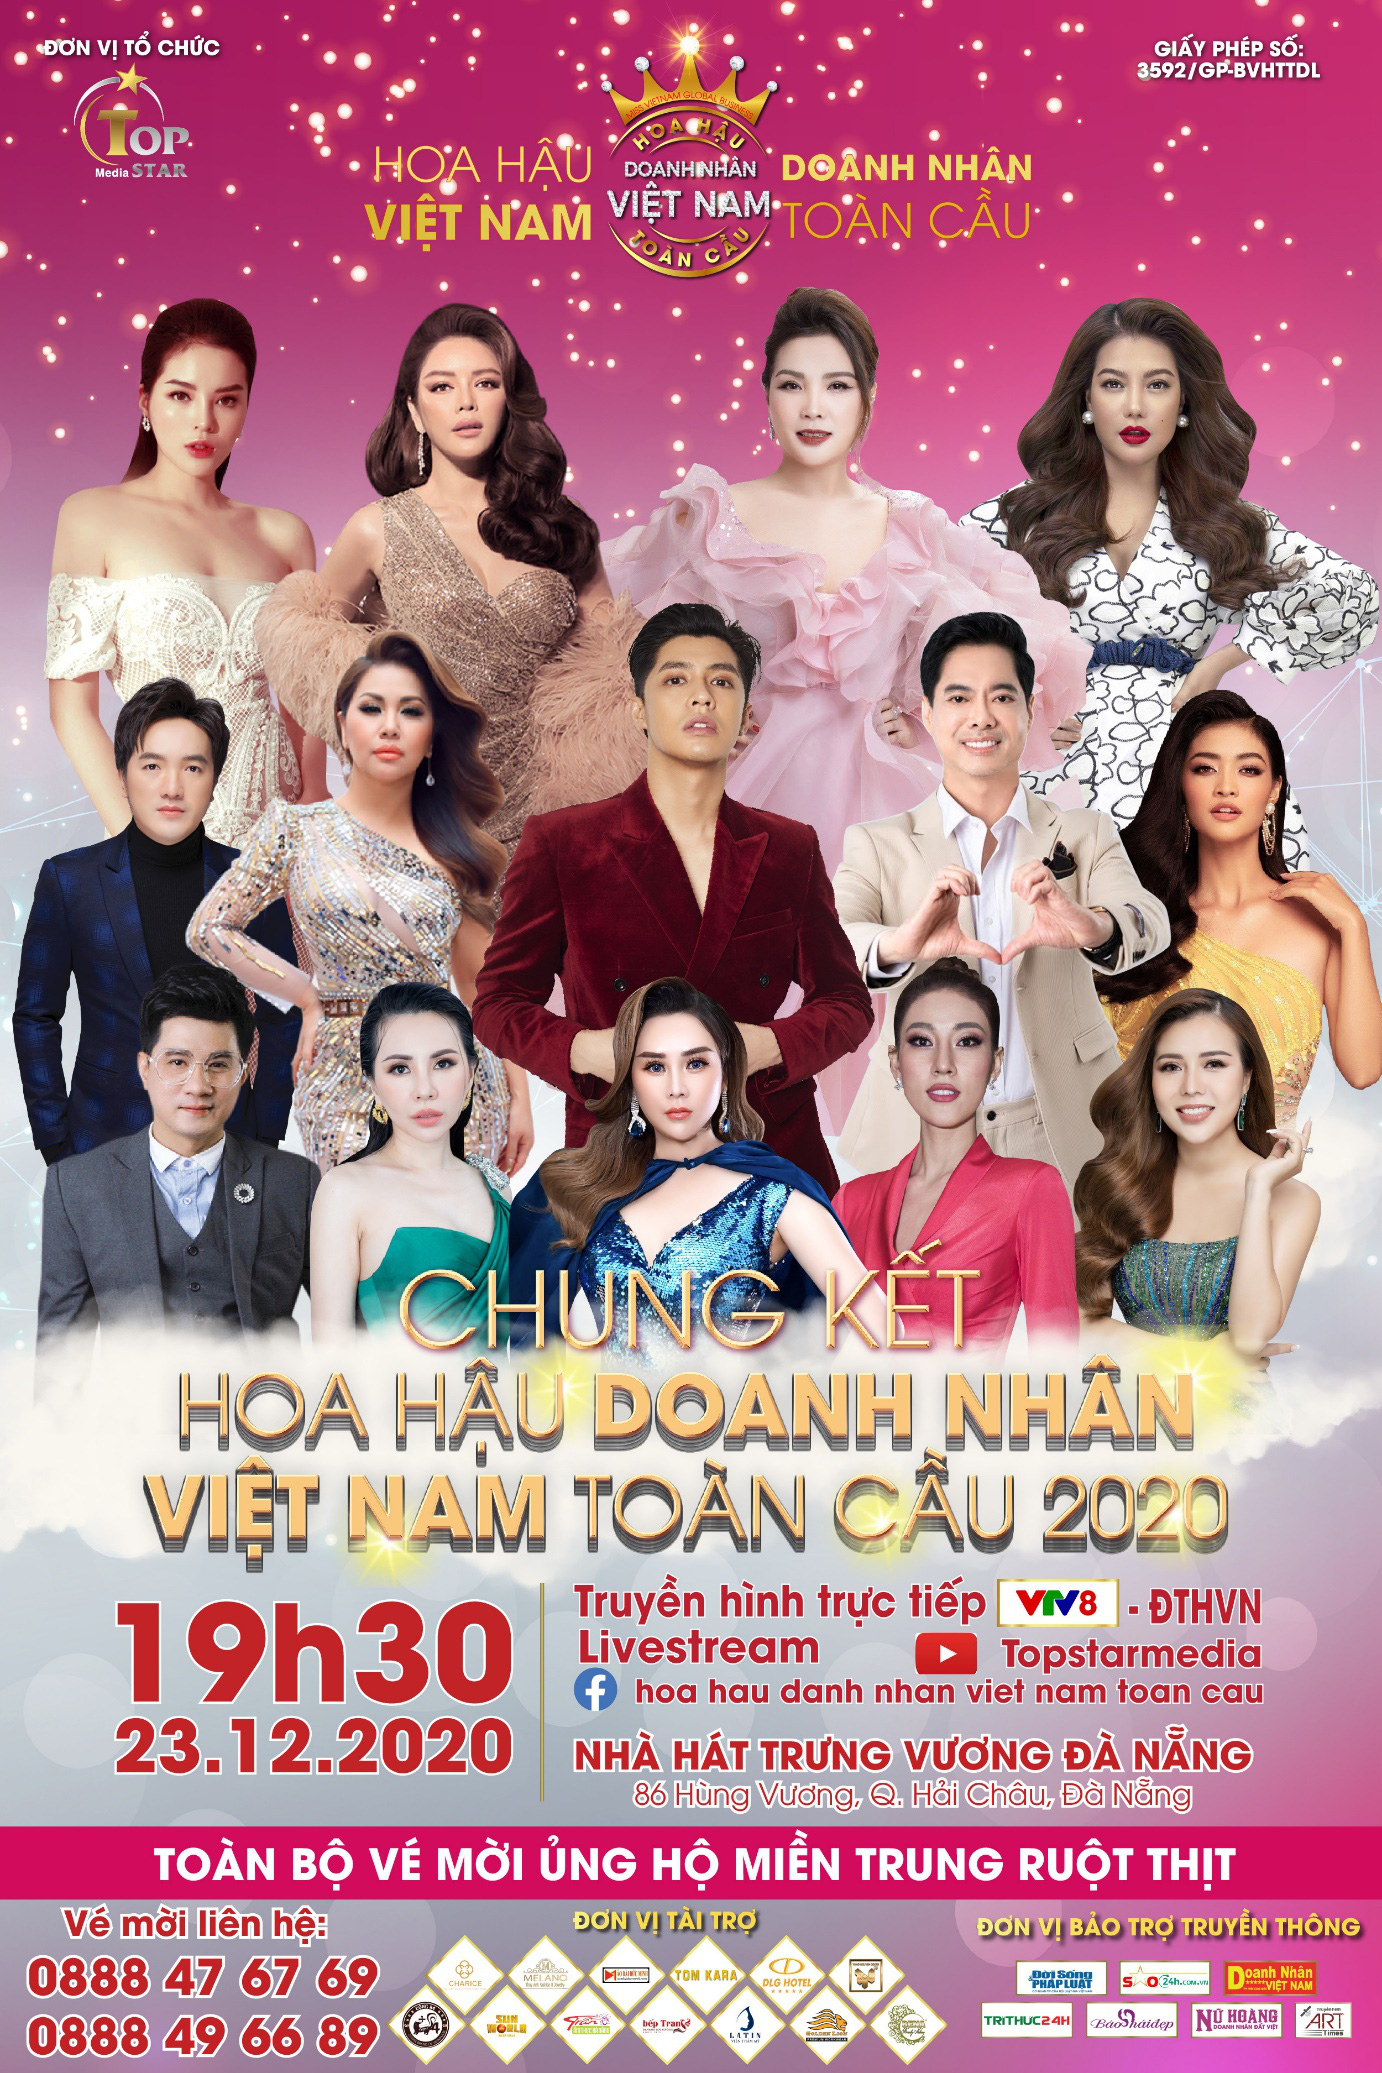 Hoàng Thị Thảo Nguyên tiết lộ chấm thi trong “Hoa hậu Doanh nhân Việt Nam Toàn cầu 2020” - Ảnh 5.